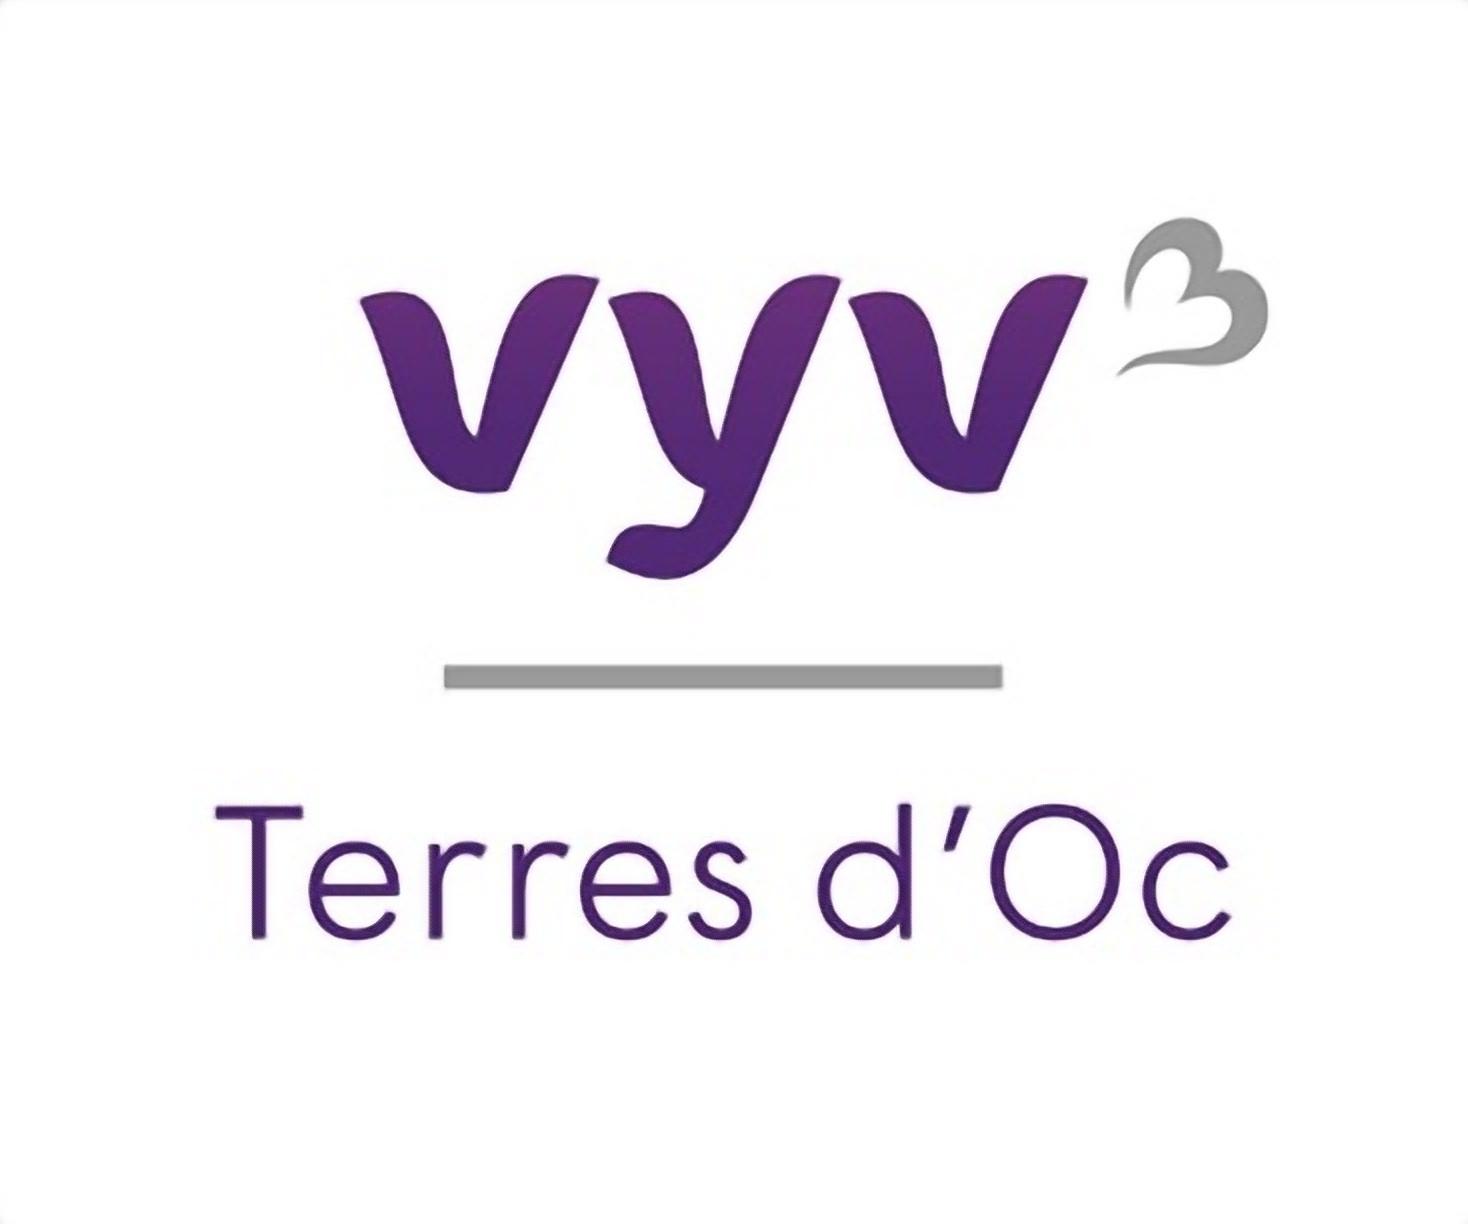 Vyv Domicile - Services De Soins Infirmiers à Domicile (ssiad) - Valence D'albigeois Valence D'albigeois